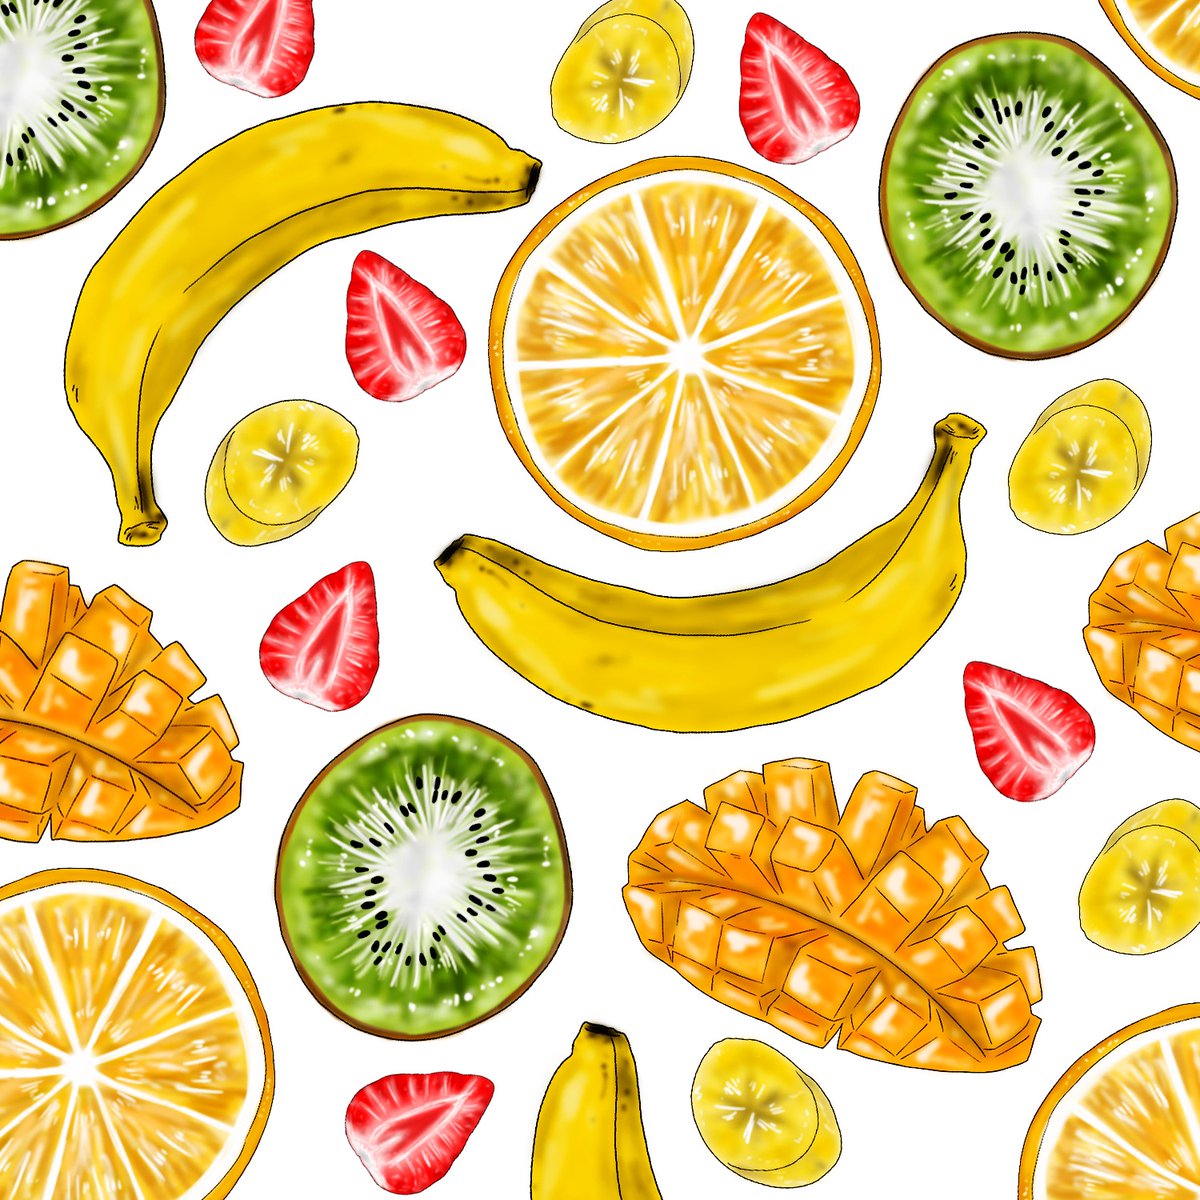 Moe 断面図良き フルーツ 断面図 果物 果物イラスト 絵 イラストレーション マンゴー イチゴ バナナ キウイ フルーツ柄 お絵かき デザイナー Fruits Fruitsillustration Illustration Delicious Mango Kiwi Strawberry Banana